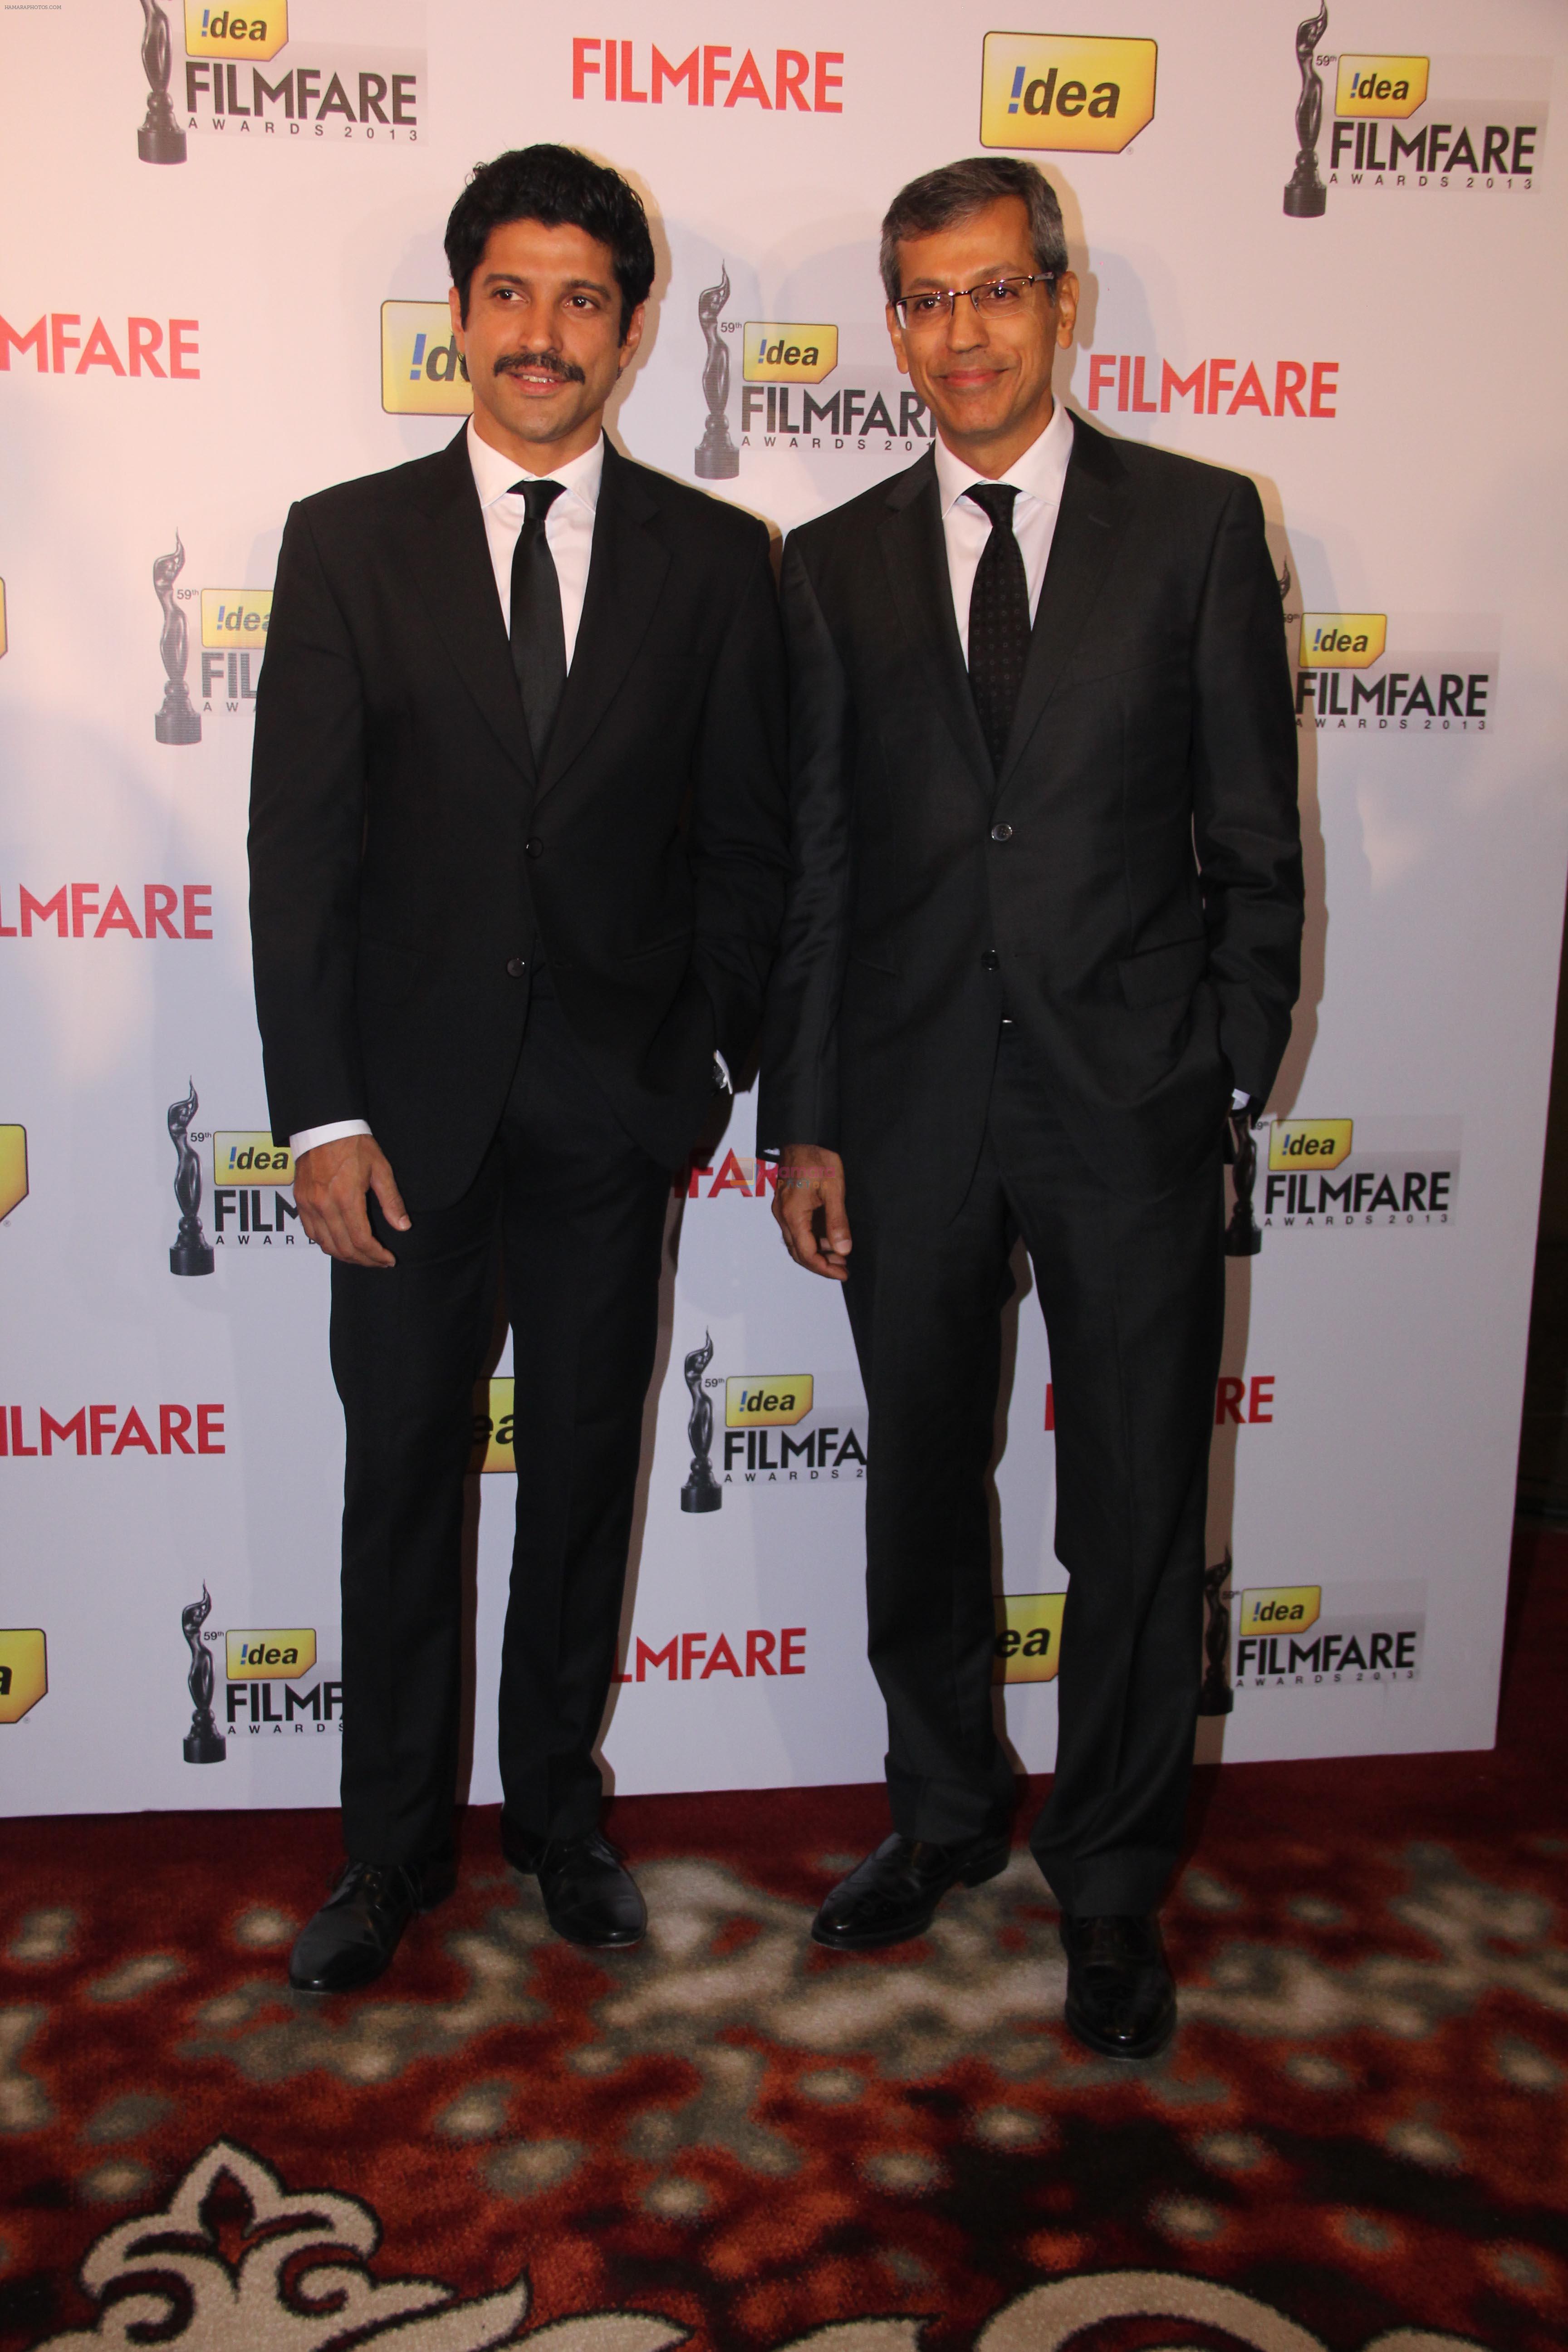 Farhan Akhtar & Mr. Tarun Rai at the 59th !dea Filmfare Awards 2013 Press Conference in Delhi03